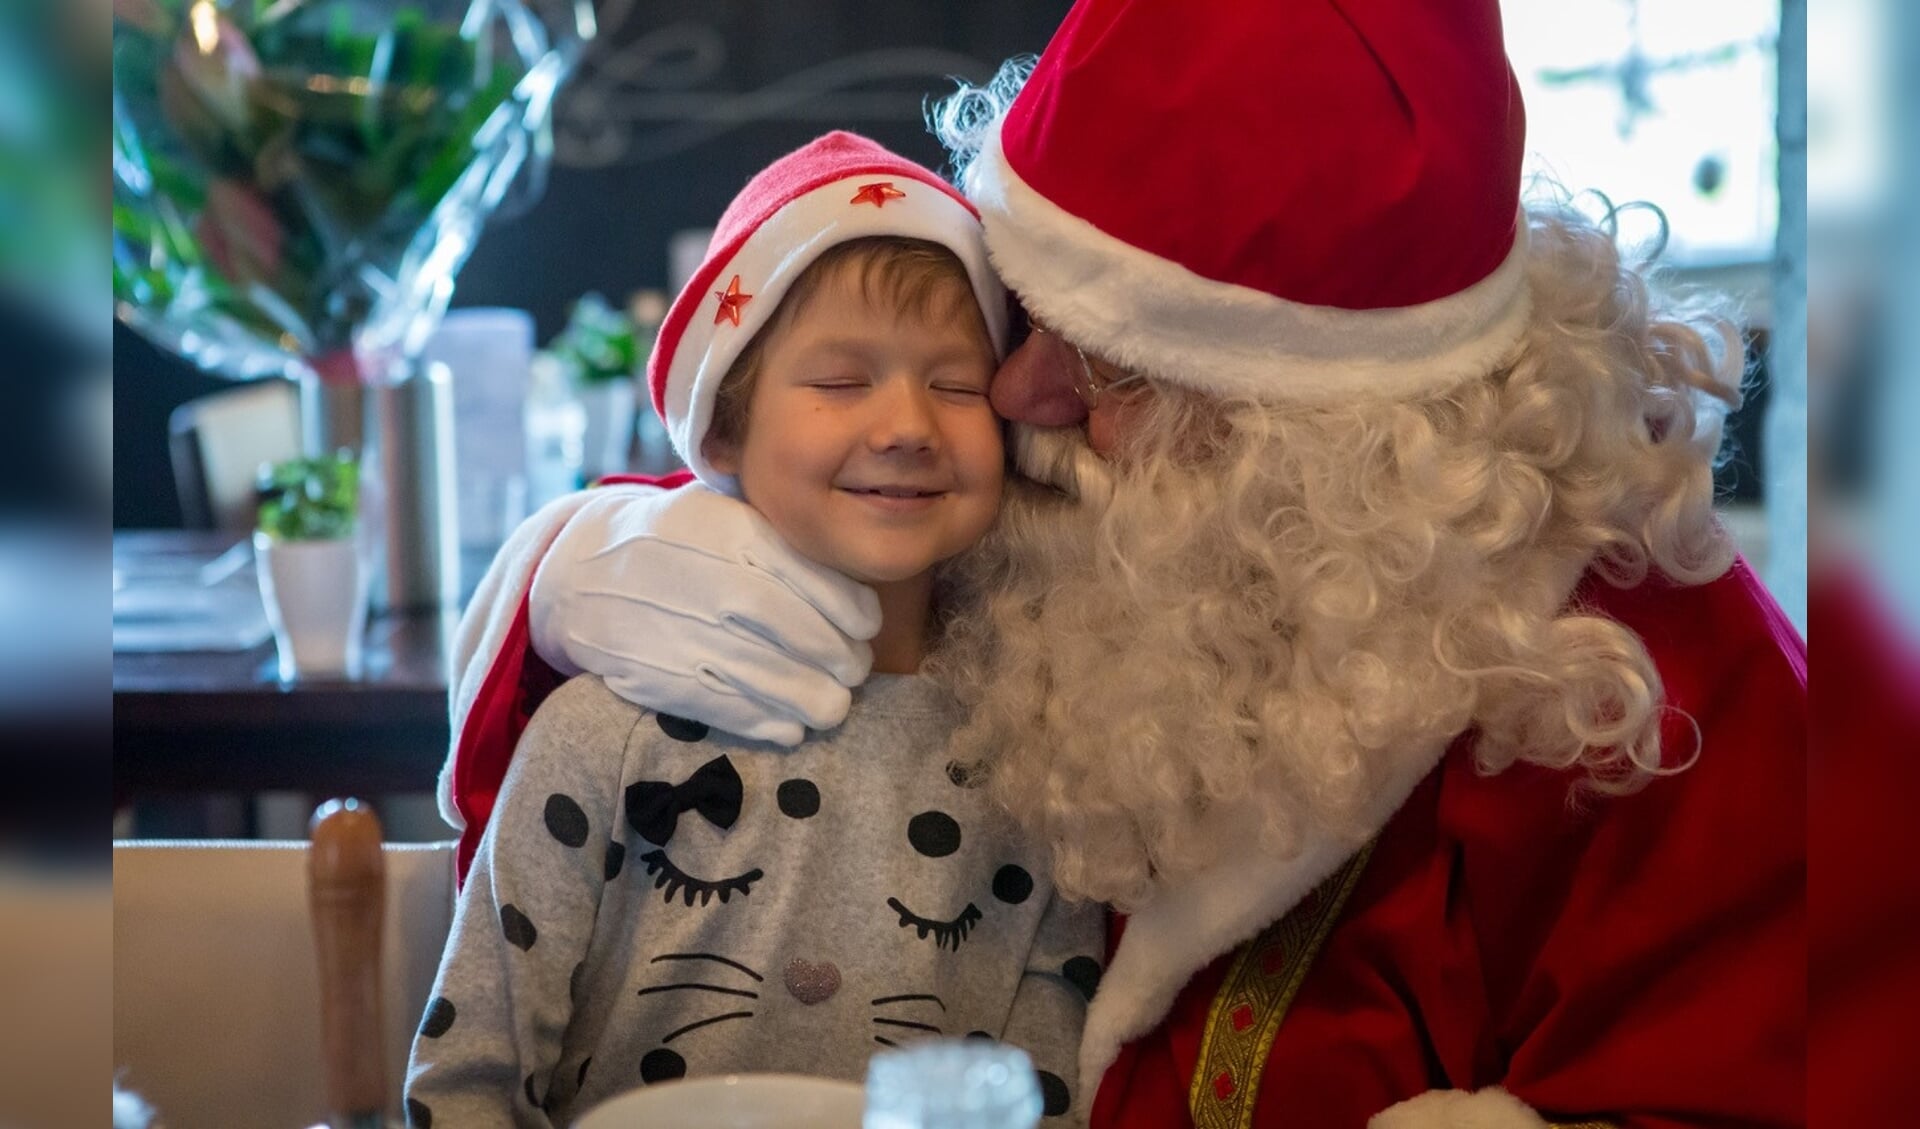 De 6-jarige Liselotte ontmoette de Kerstman. Daarmee kwam voor het meisje uit Overloon een grote wens in vervulling.